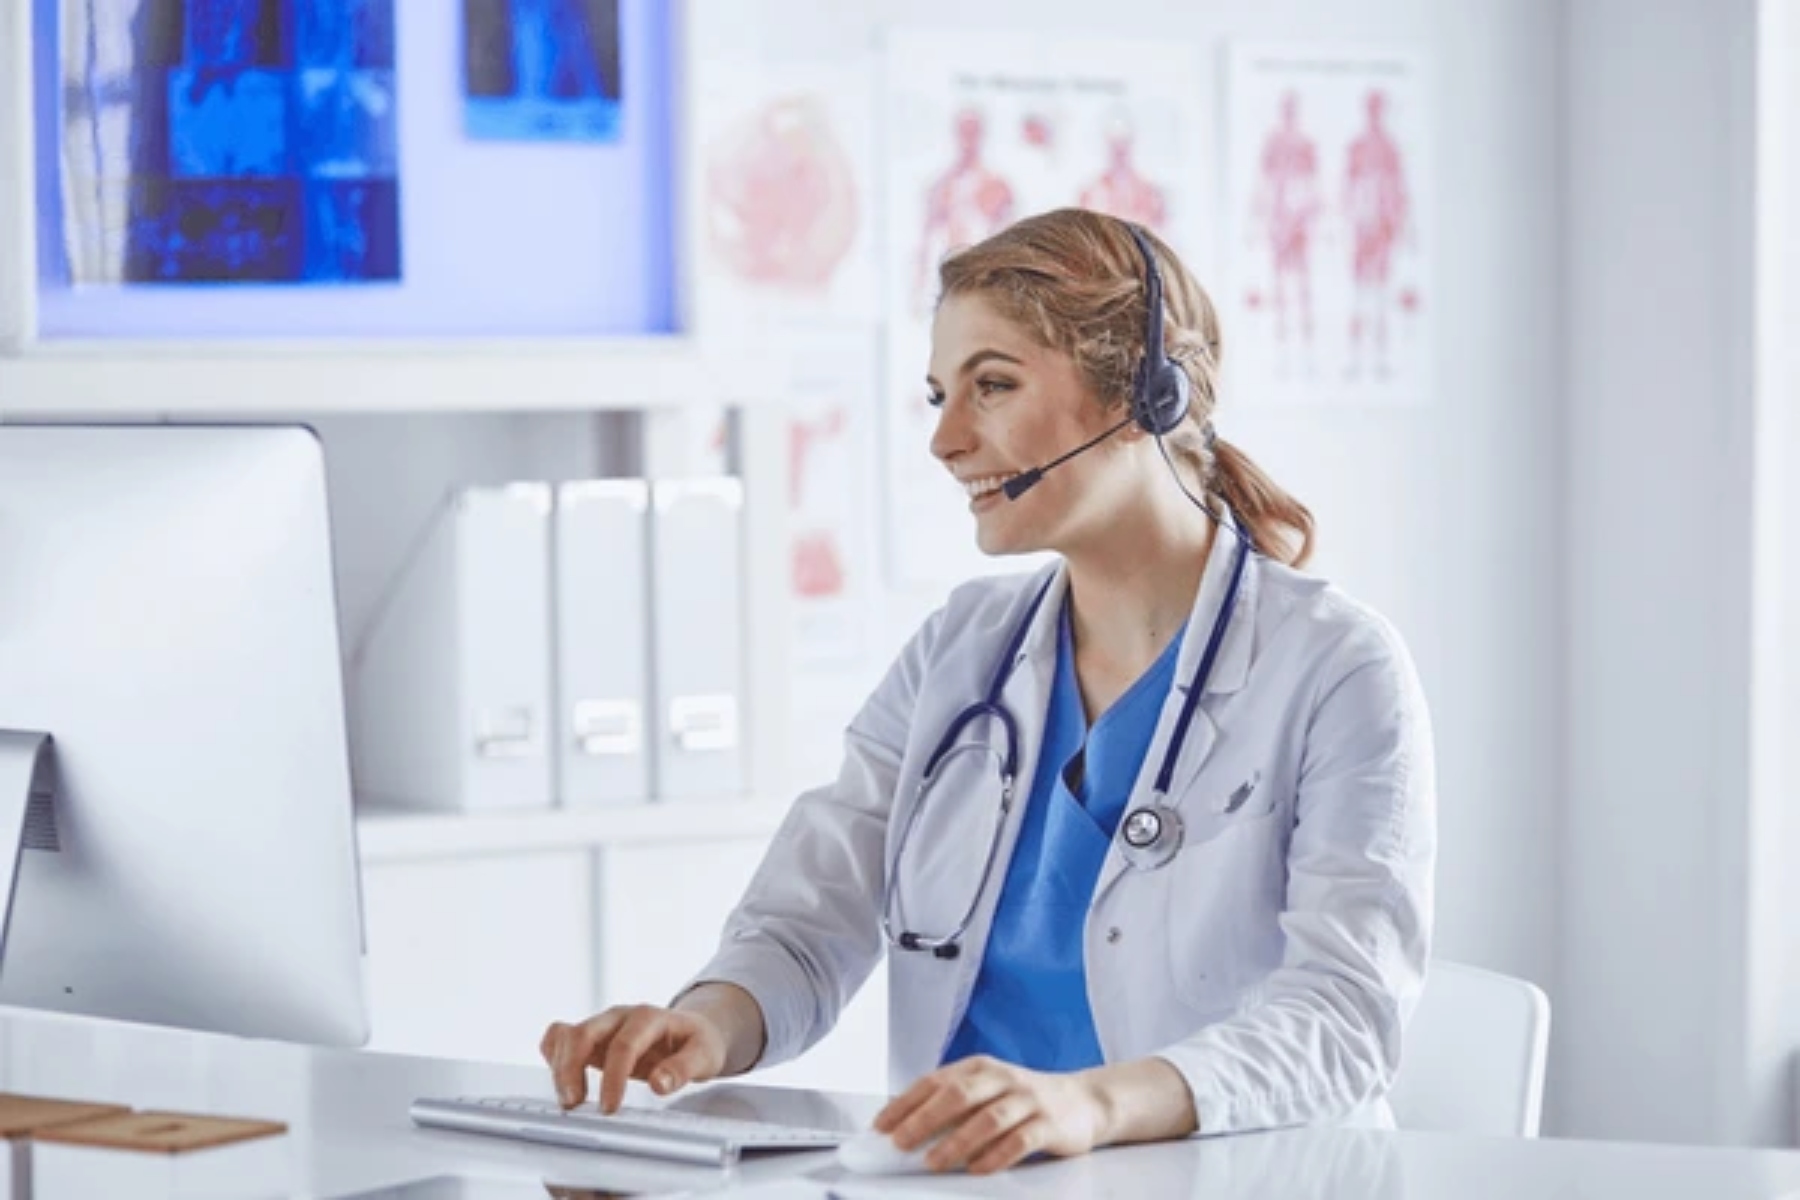 Τηλεϊατρική: Οι ασθενείς υποστηρίζουν σε μεγάλο βαθμό τις online διαβουλεύσεις